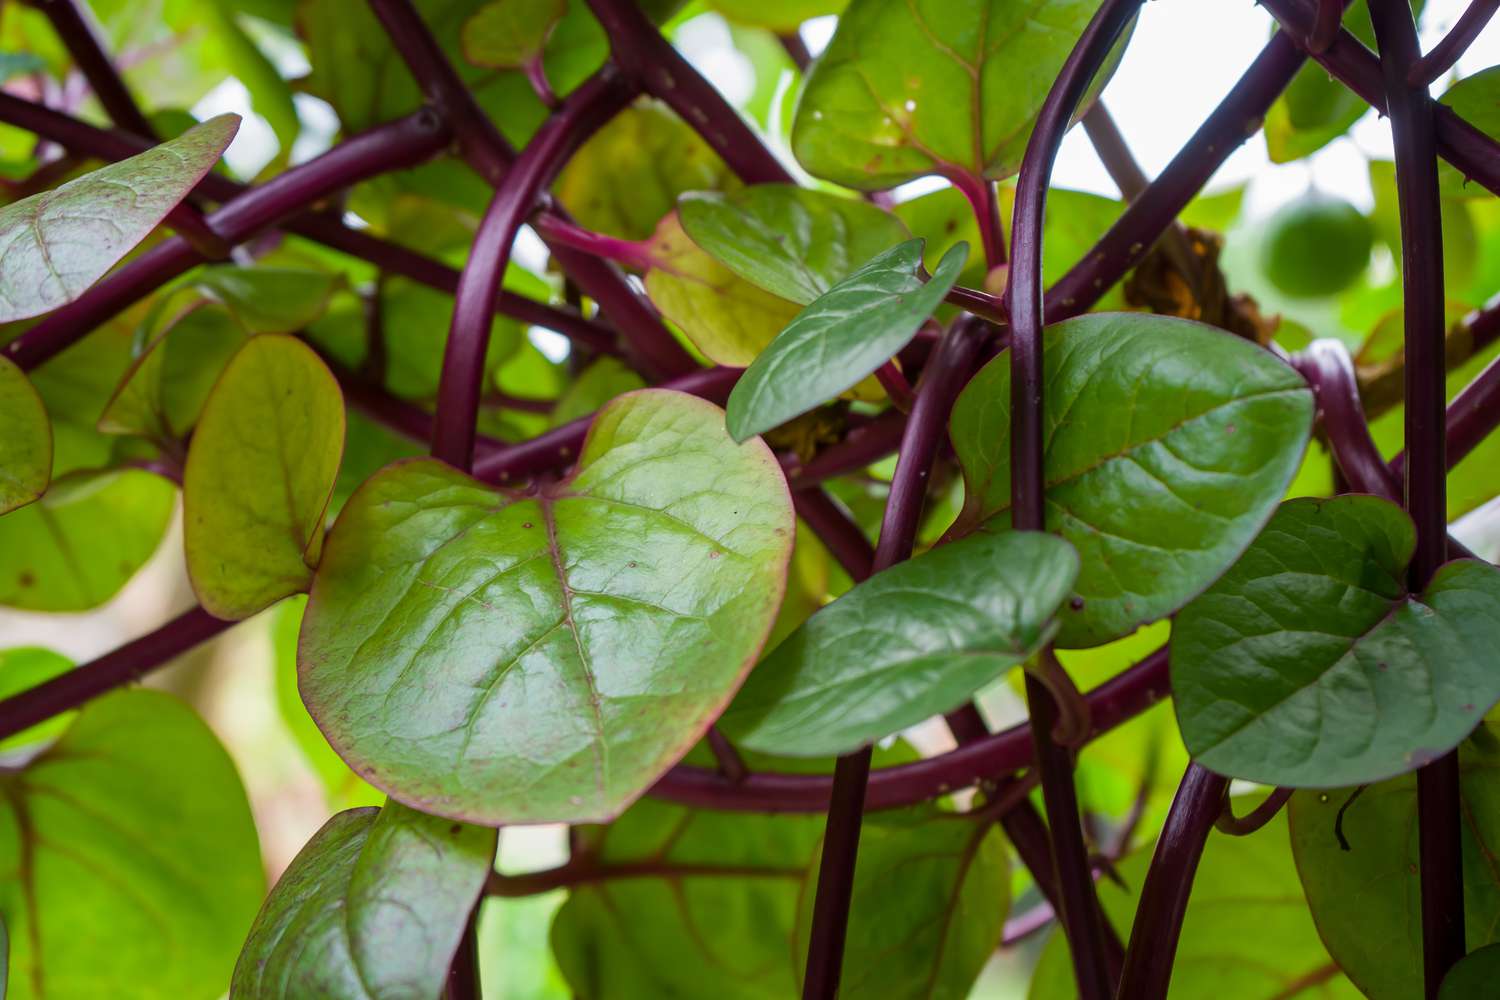 Red malabar spinach (Basella rubra)